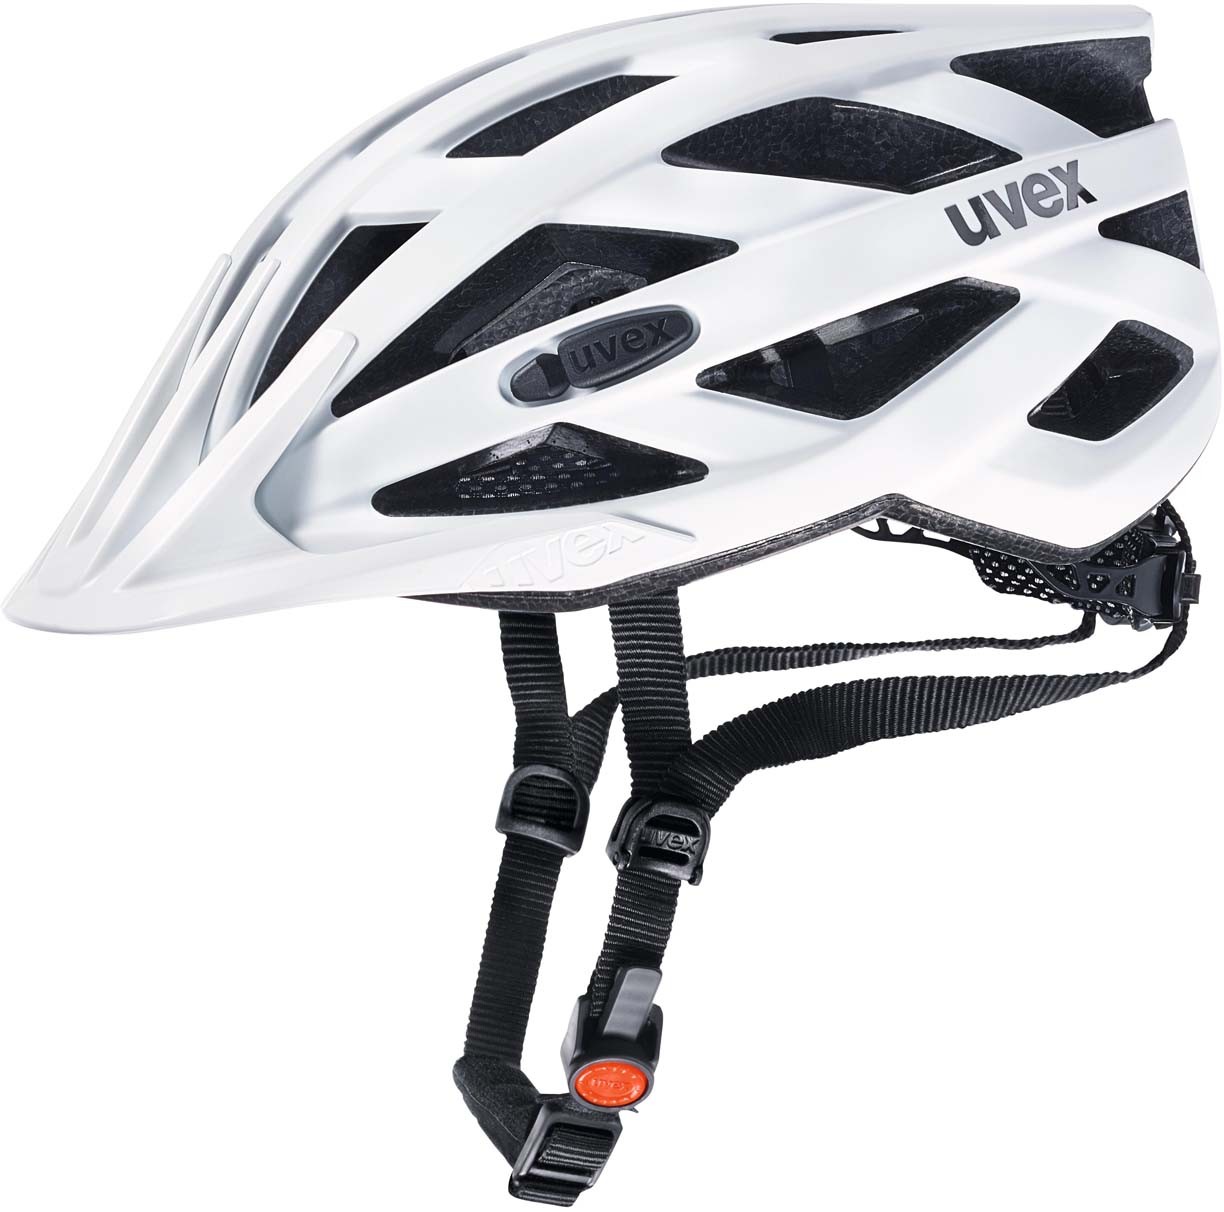 Uvex i-vo cc bicycle helmet